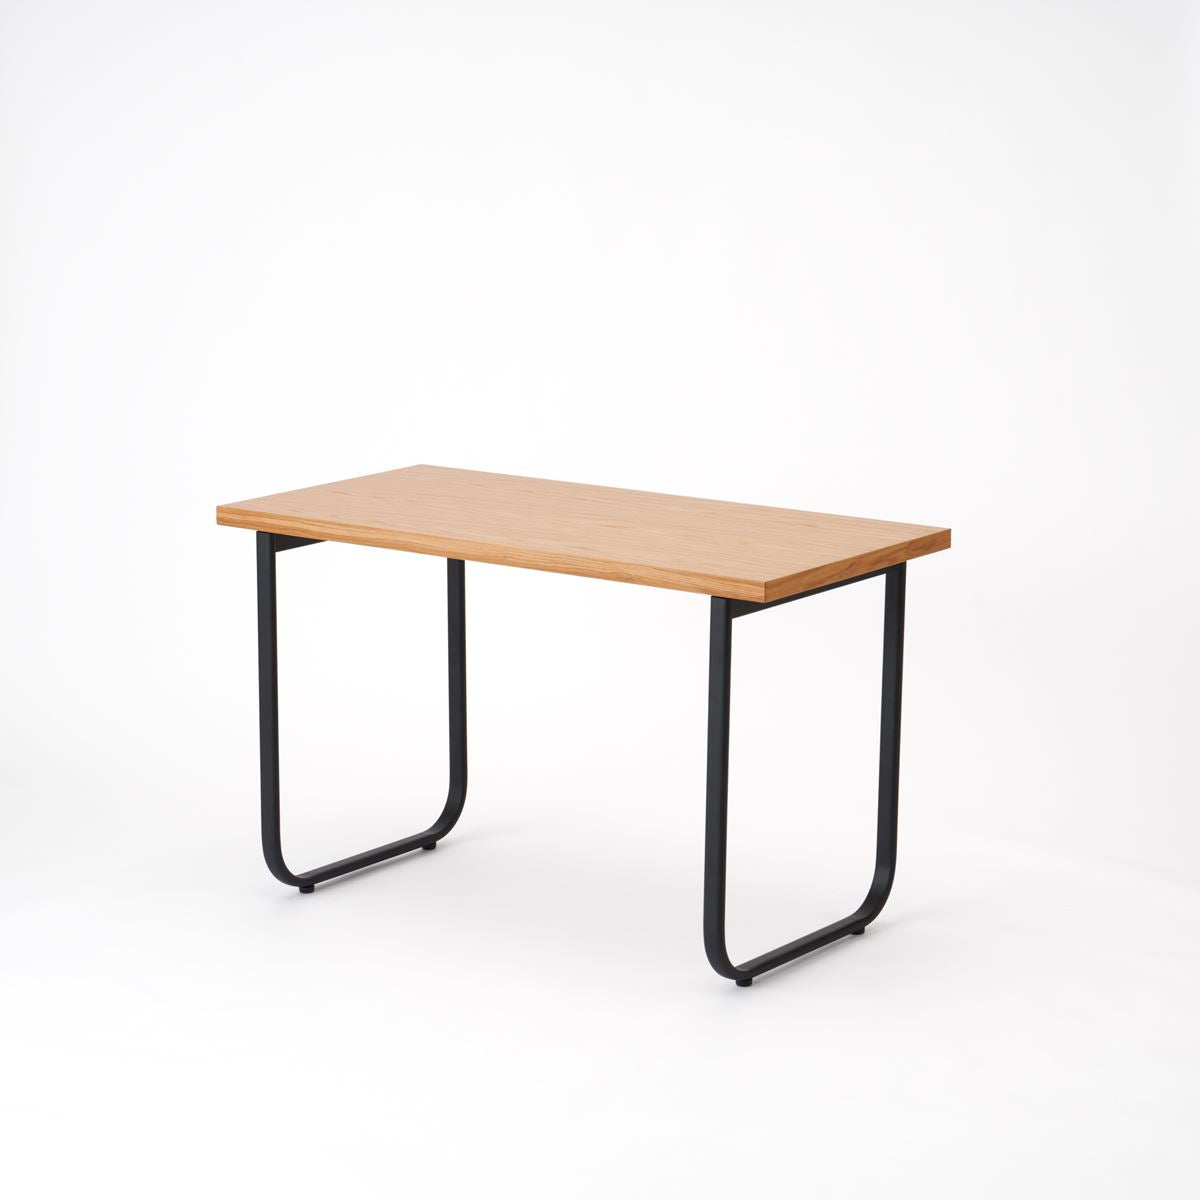 KUUM  Table W1200 × D600 - オーク突板ナチュラル / クーム テーブル